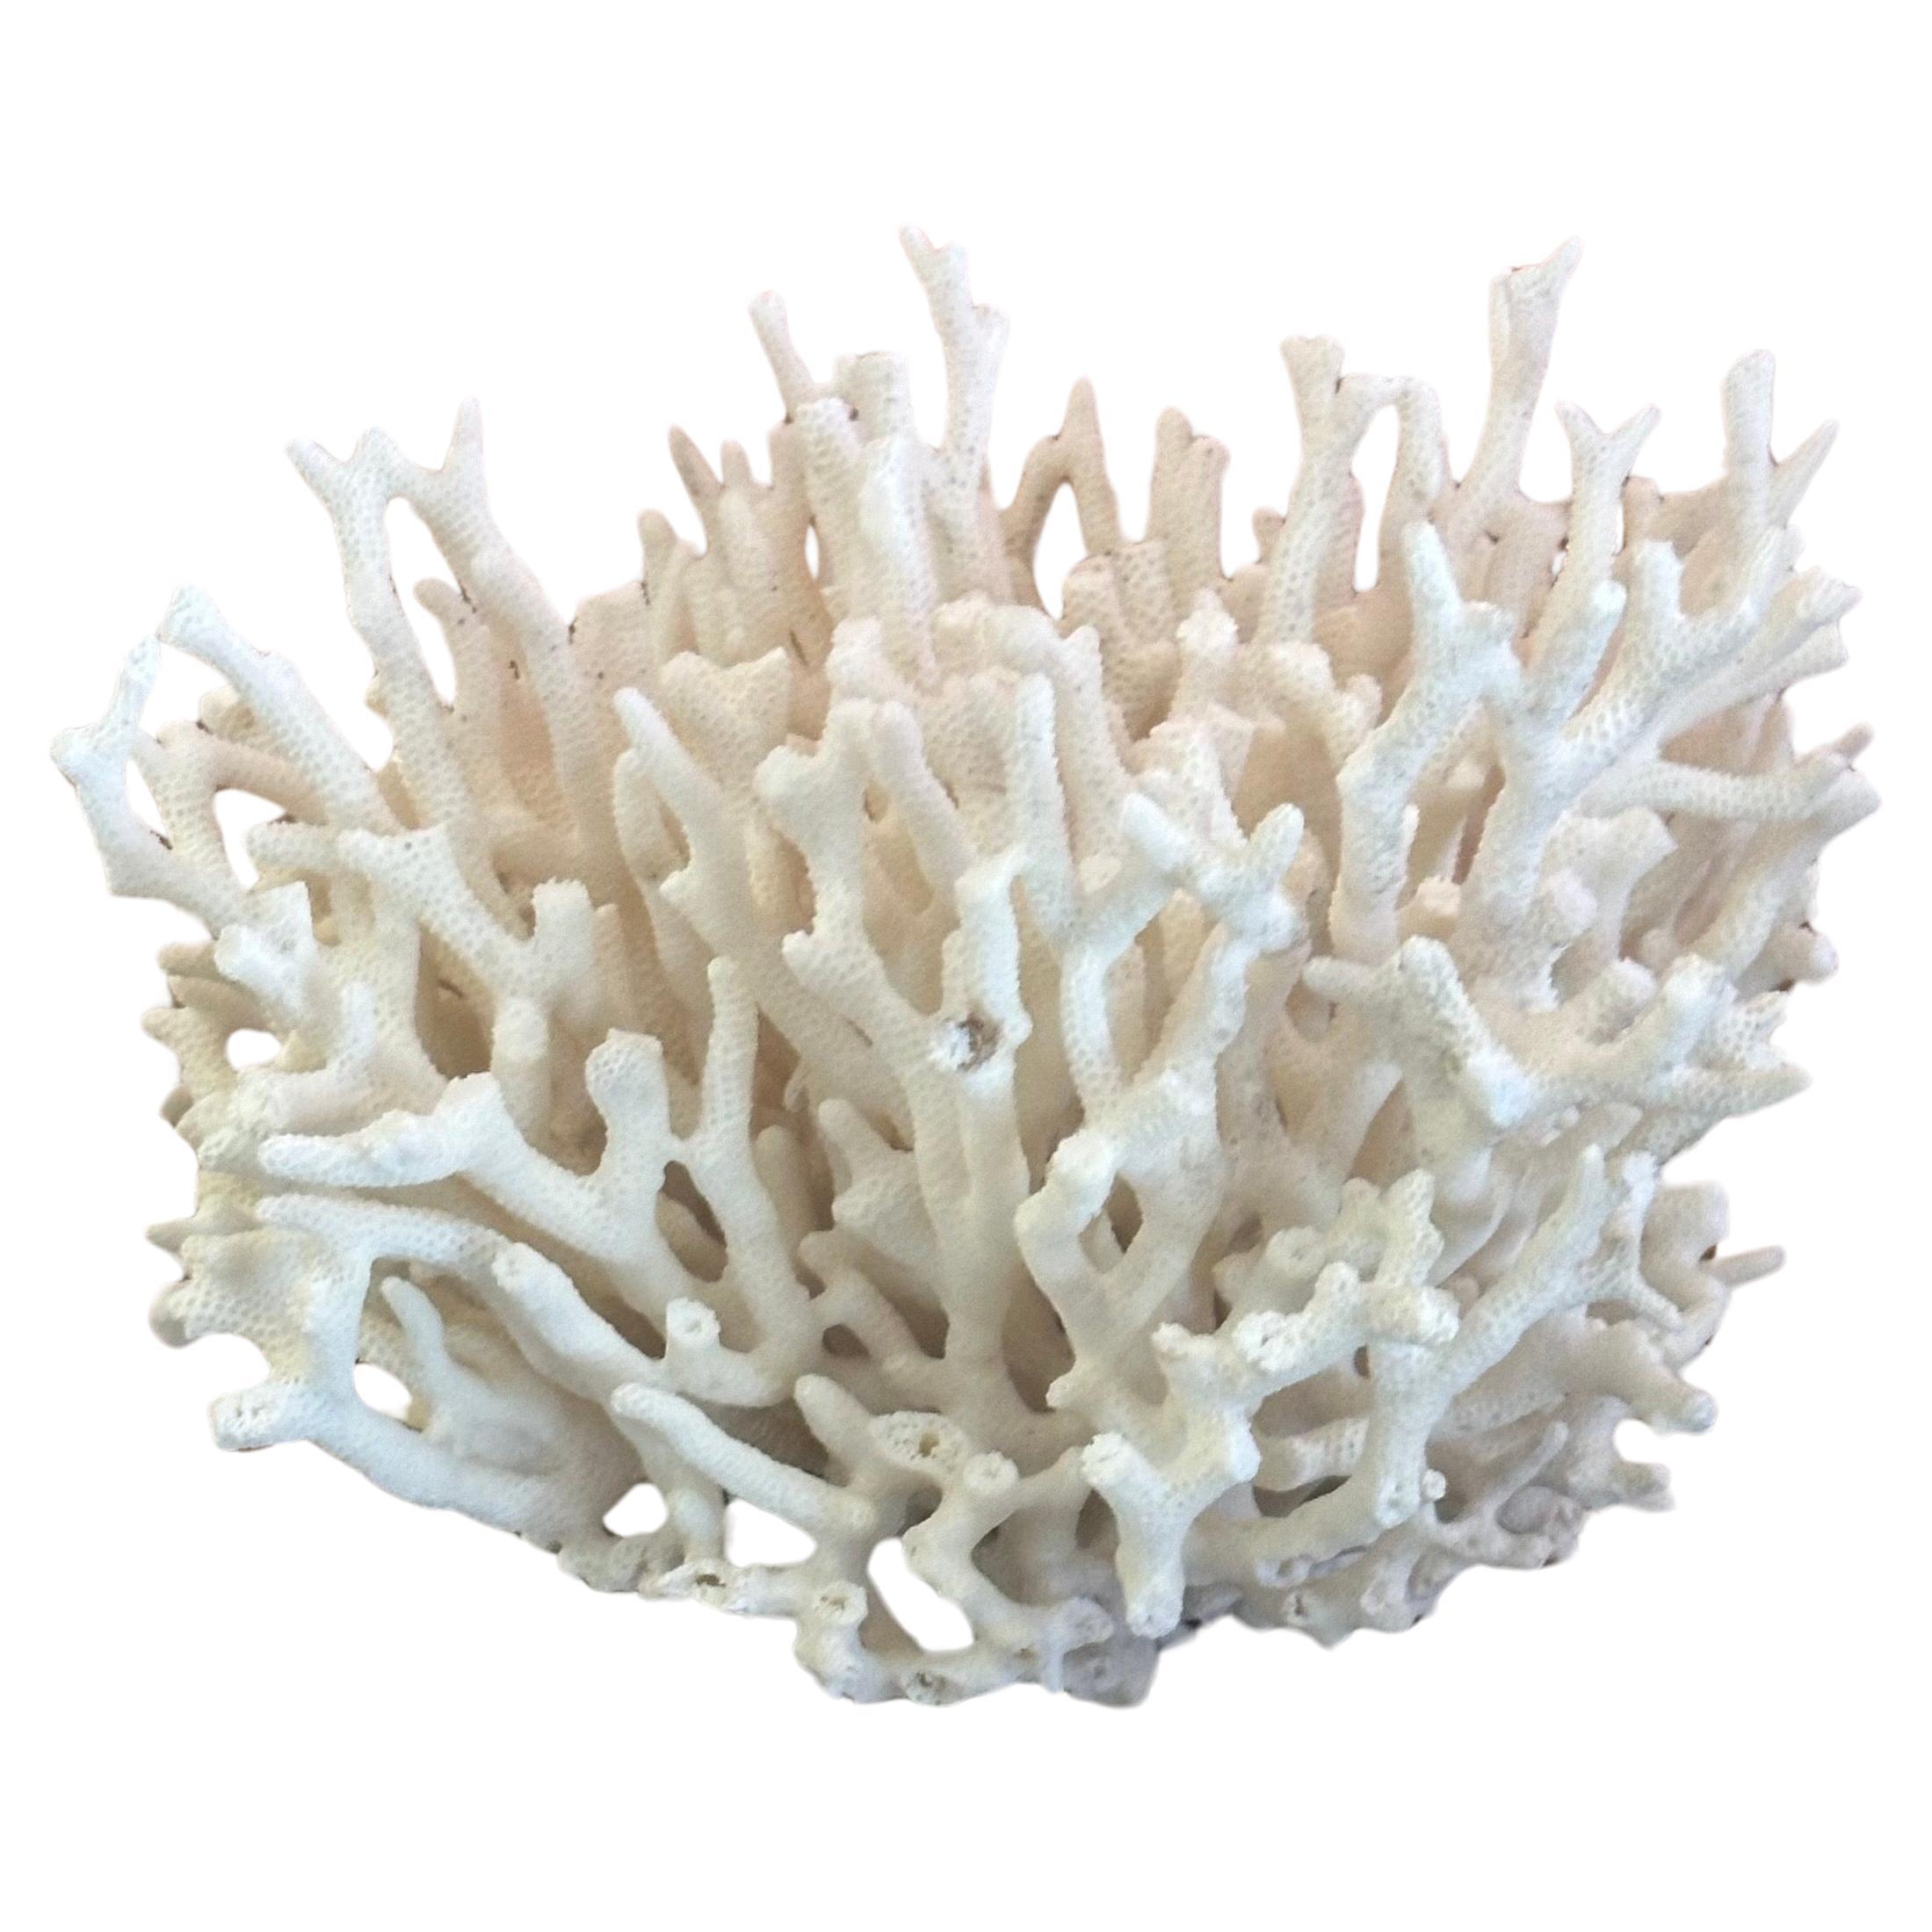 Gran espécimen de coral marino blanco natural, hacia la década de 1970. La pieza está en muy buen estado y mide 7